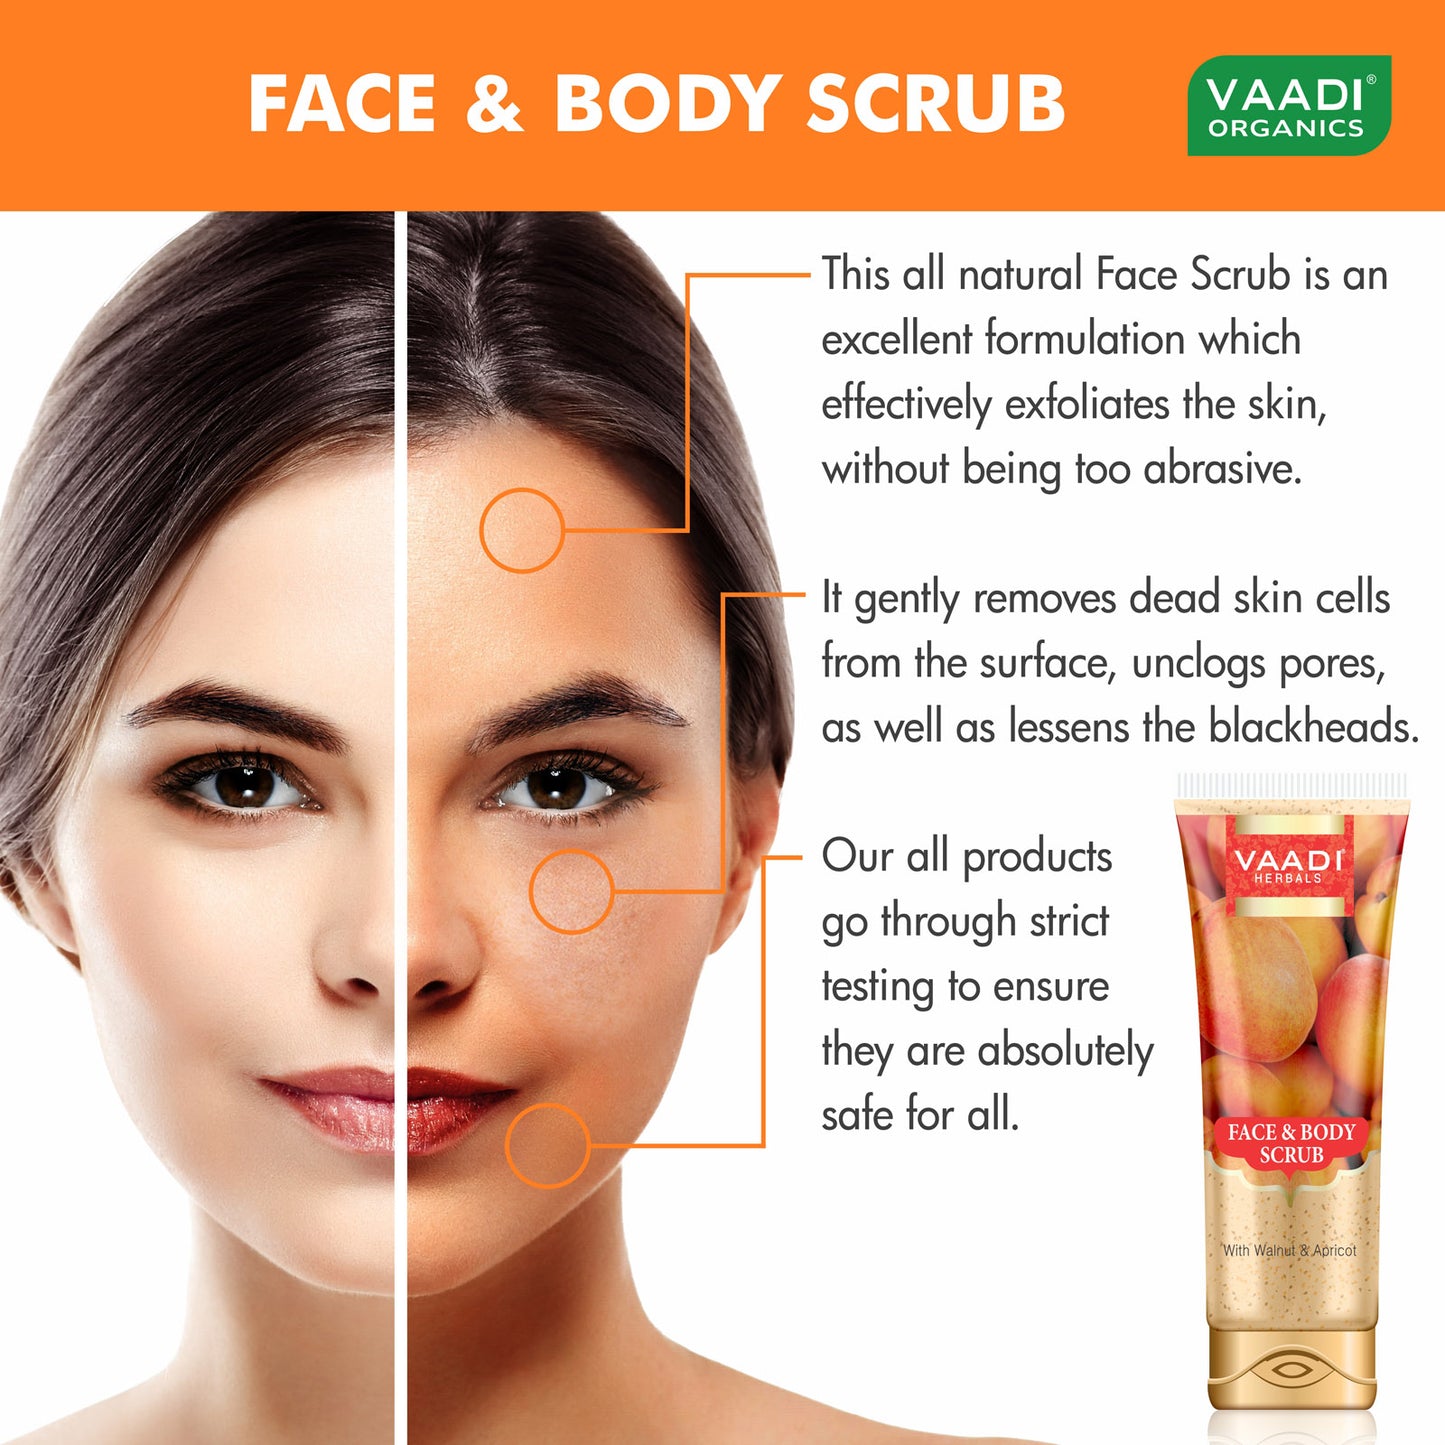 Face & Body Scrub with Walnut & Apricot (110 gms)